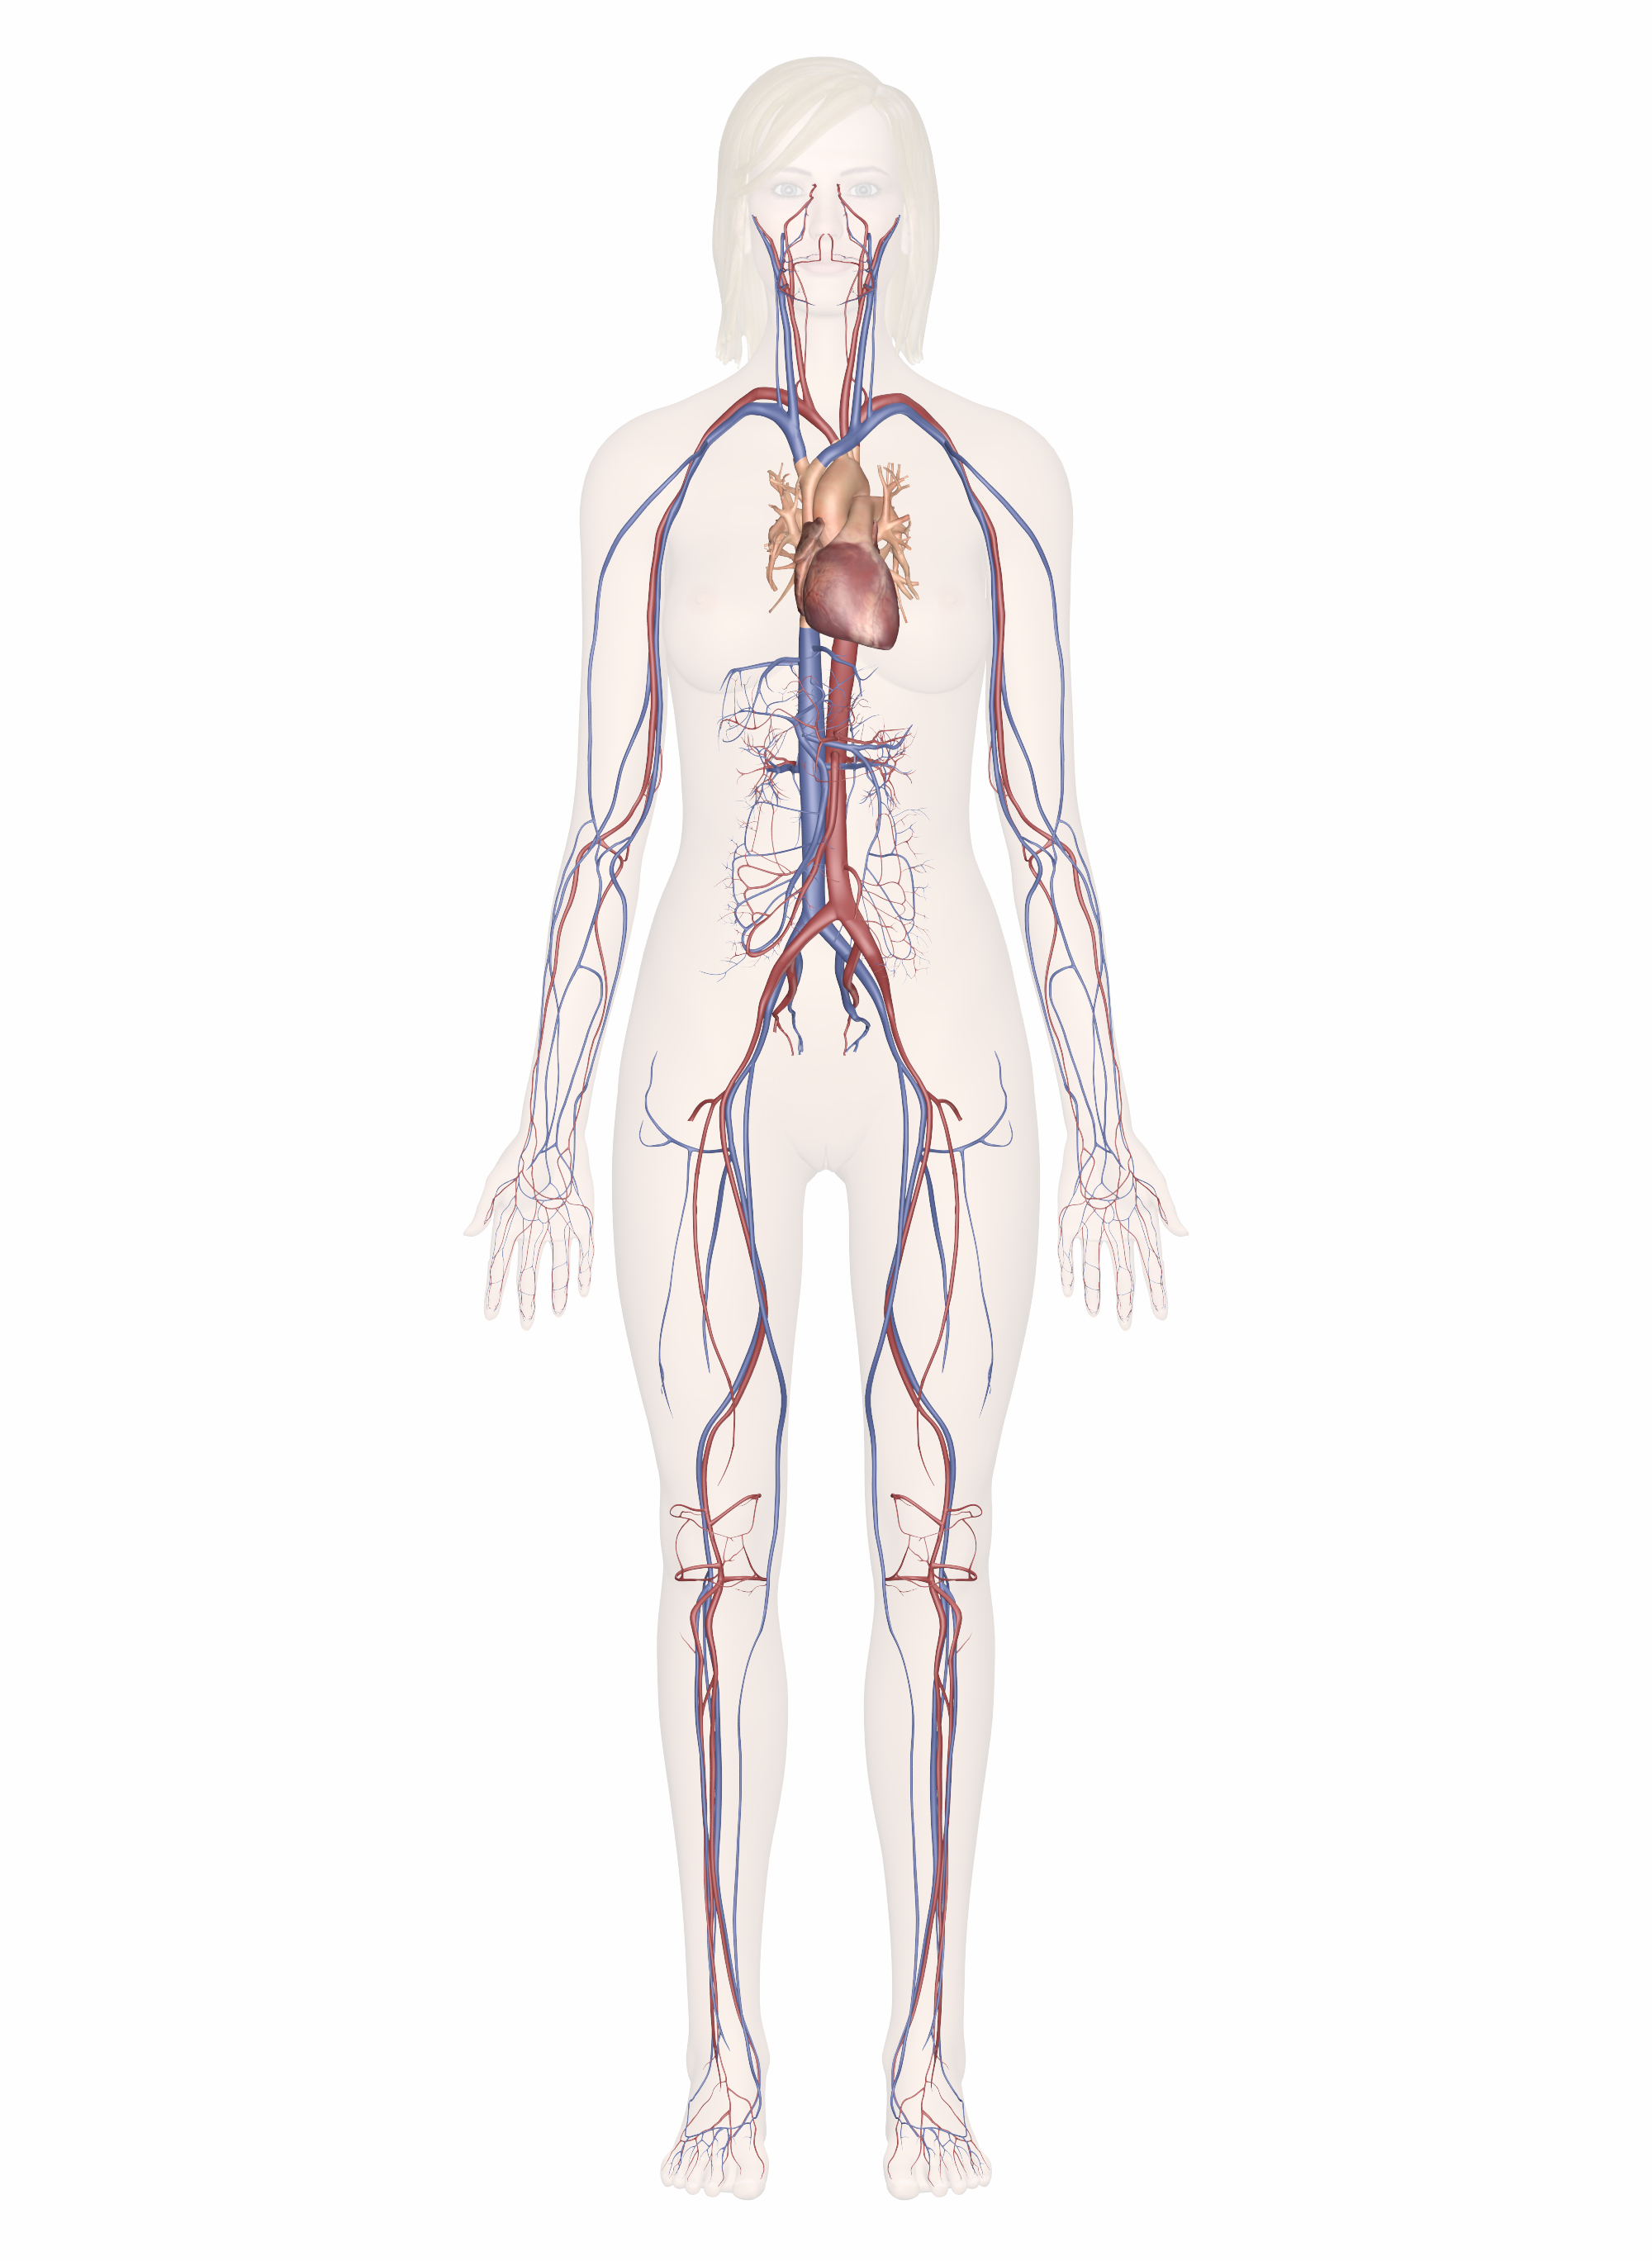 Veins And Arteries Diagram Cardiovascular System Human Veins Arteries Heart